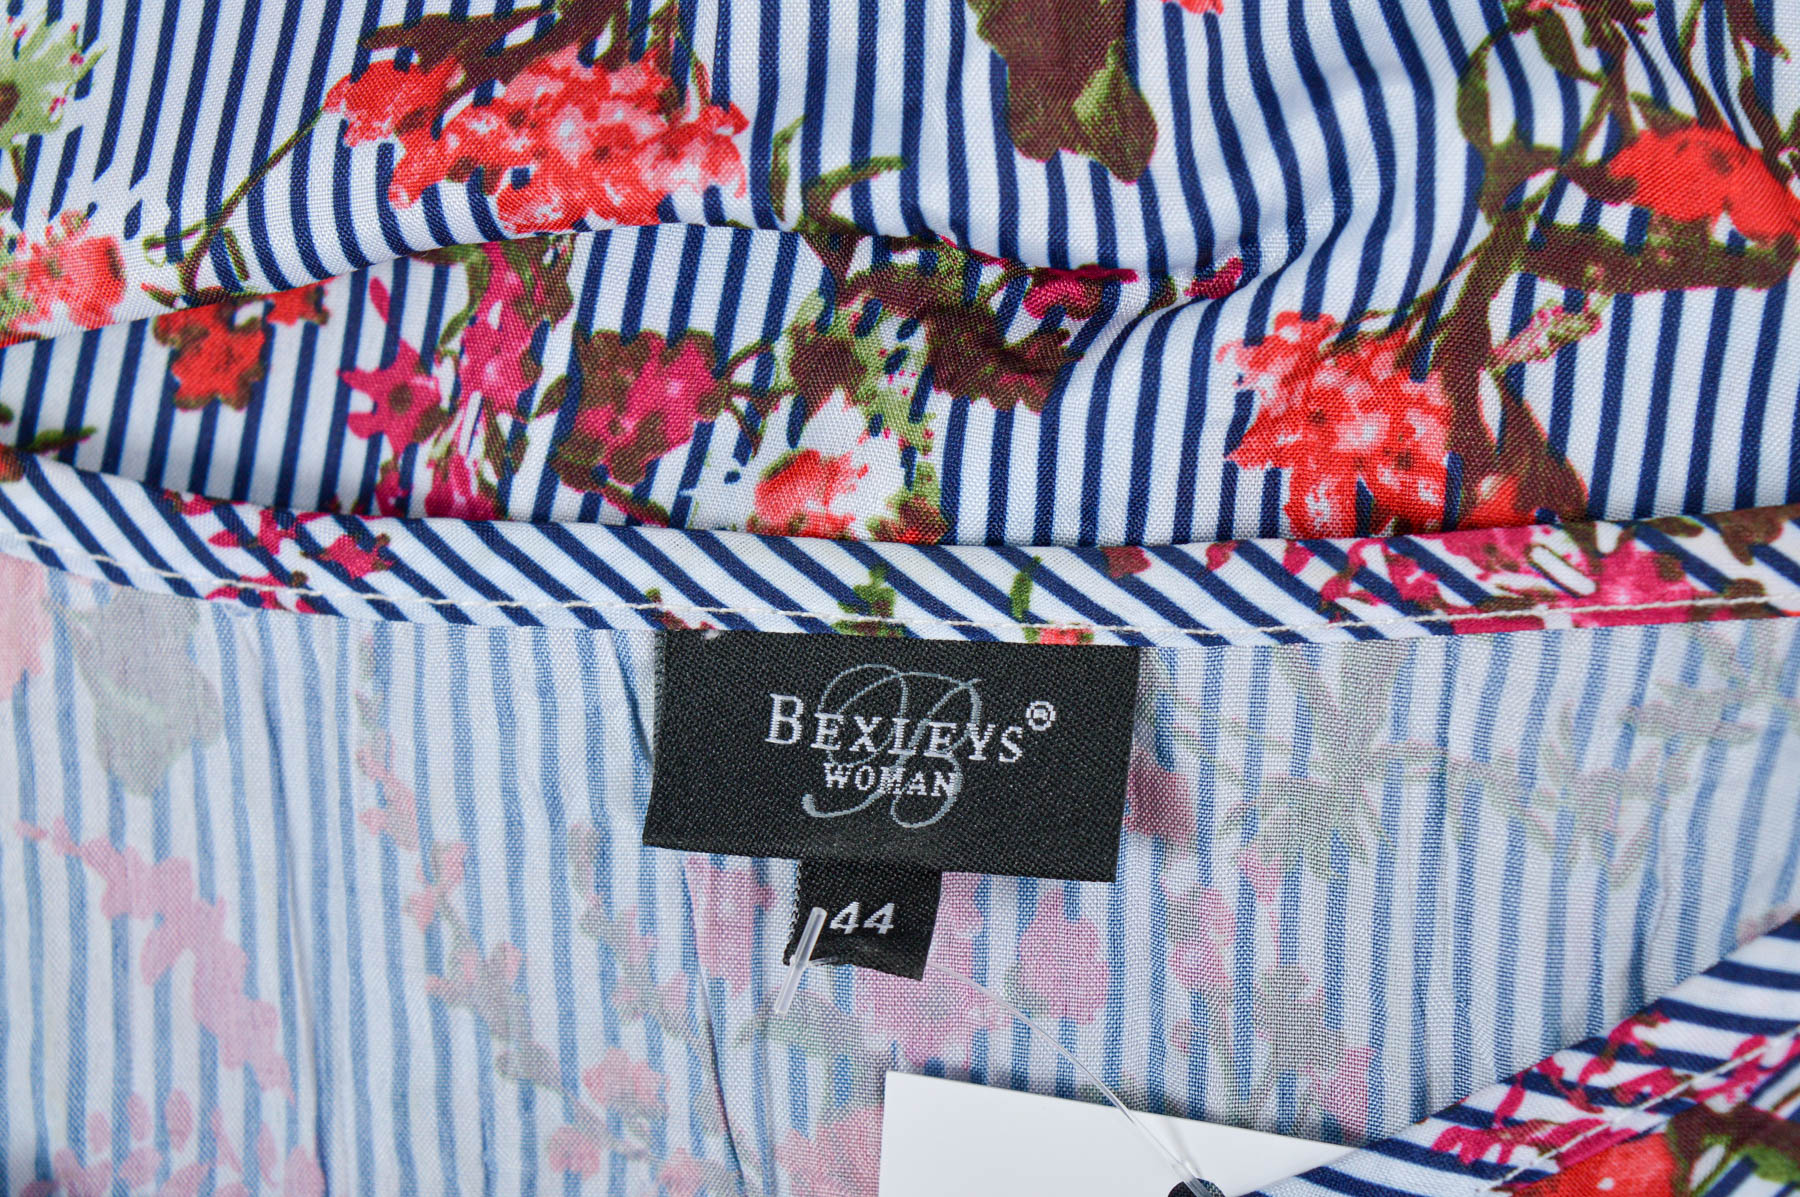 Women's shirt - Bexleys - 2